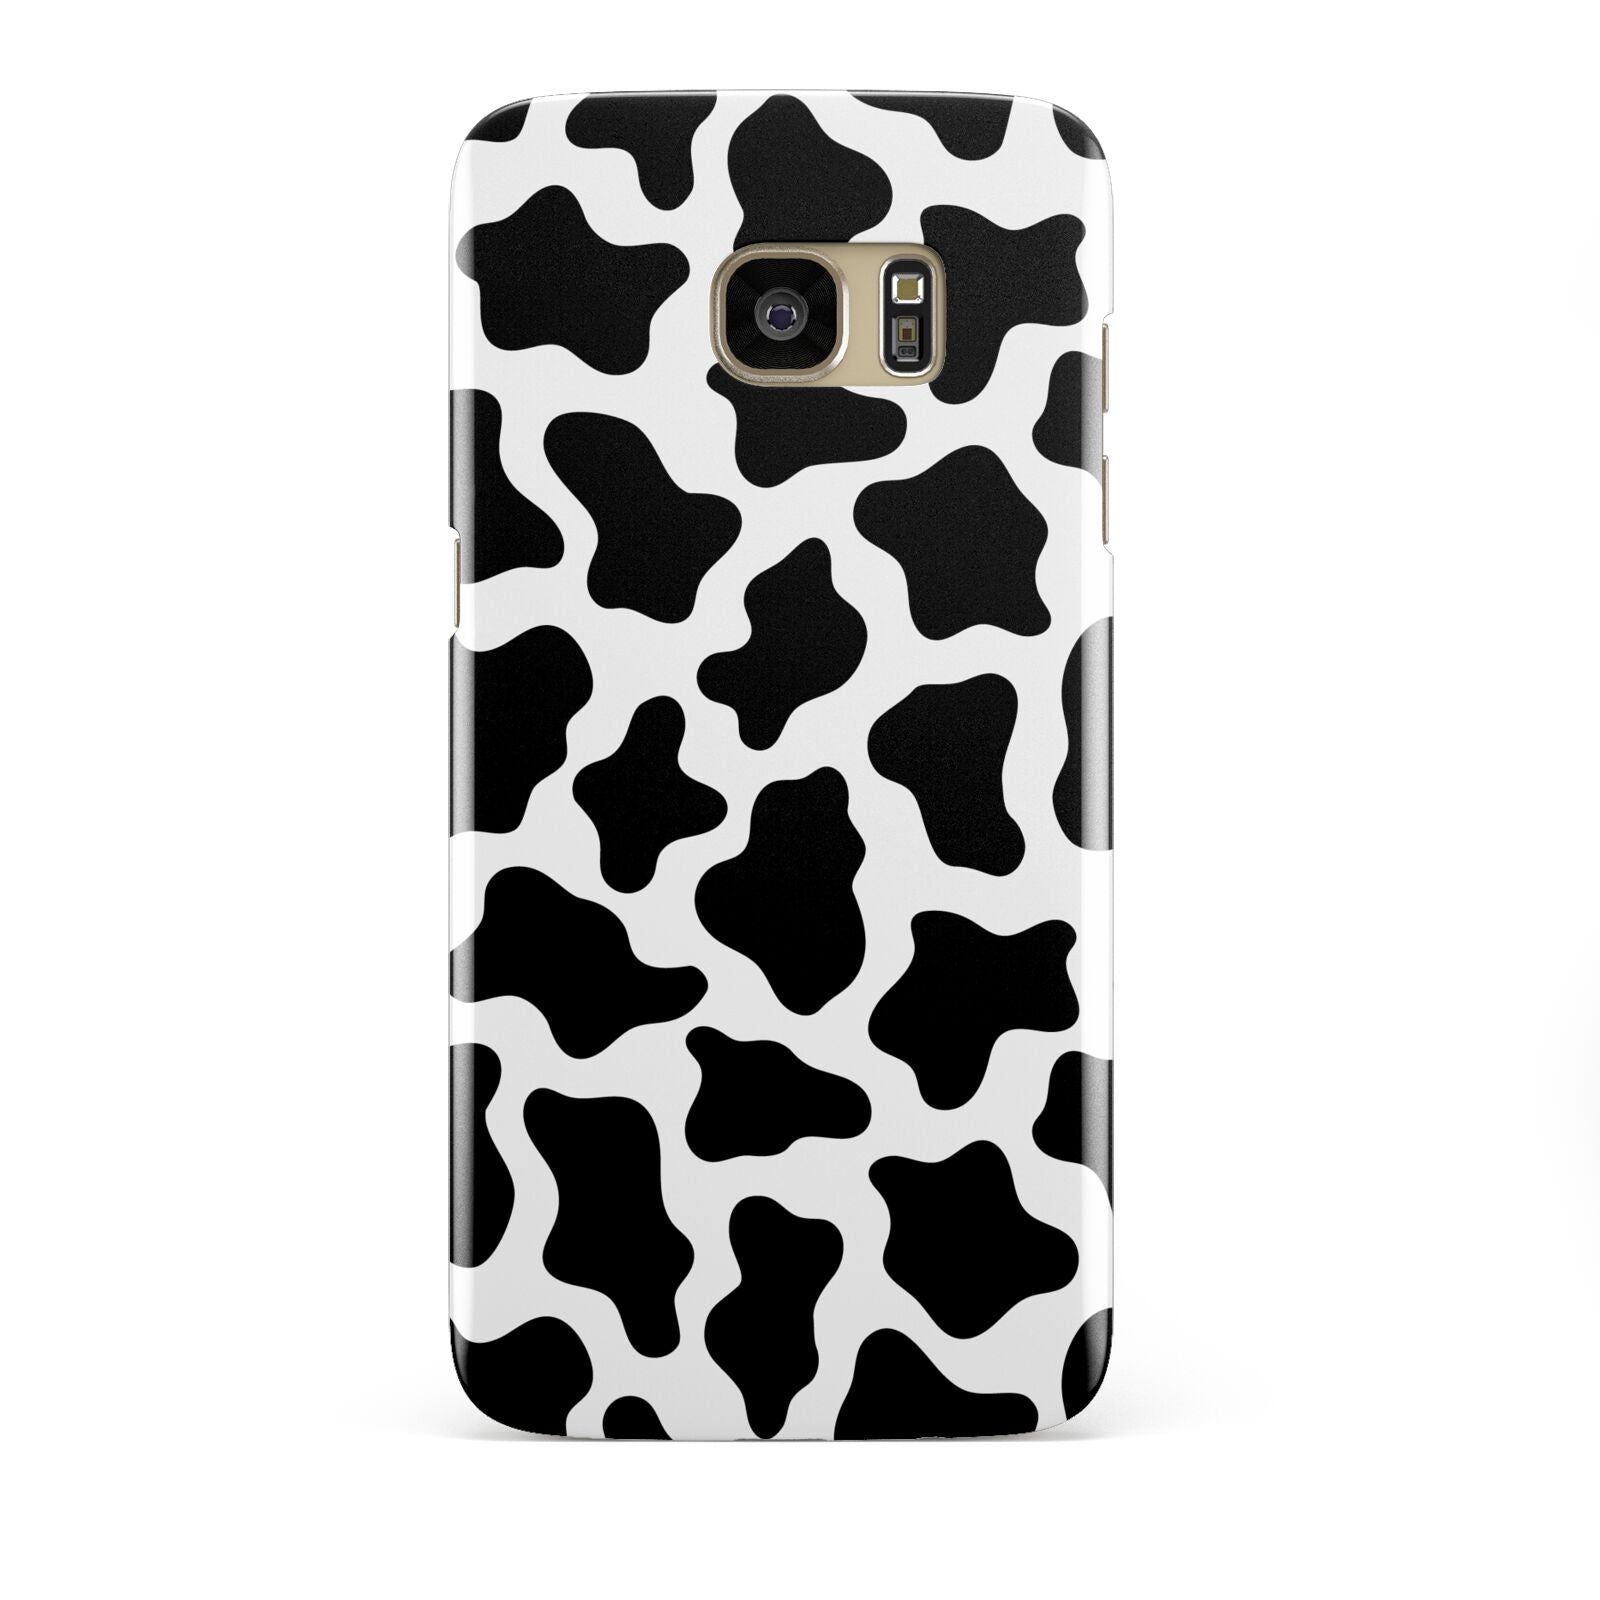 Cow Print Samsung Galaxy S7 Edge Case